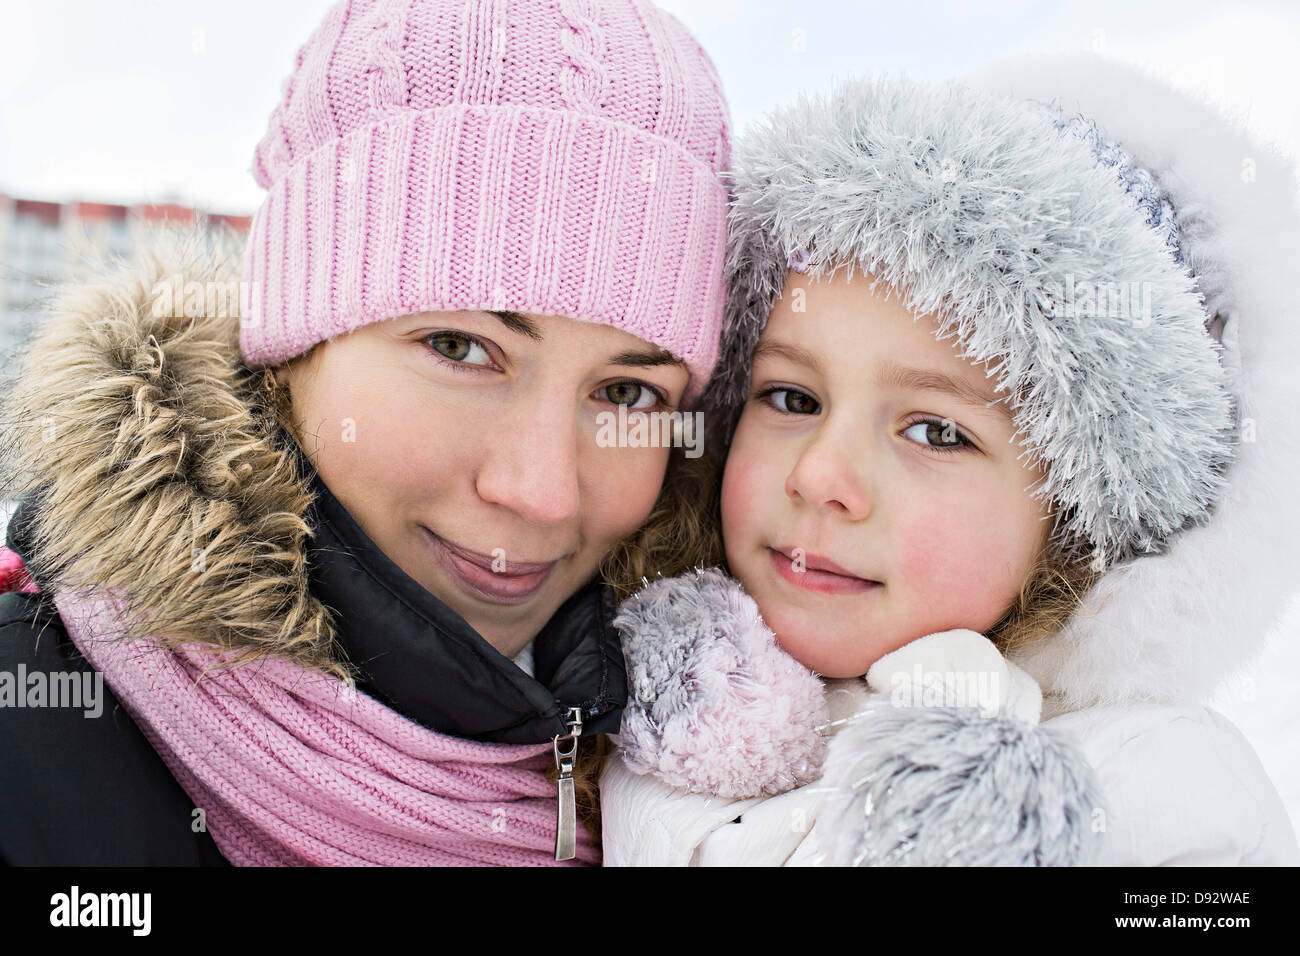 Une mère et sa fille dans des vêtements chauds à l'extérieur en hiver Banque D'Images